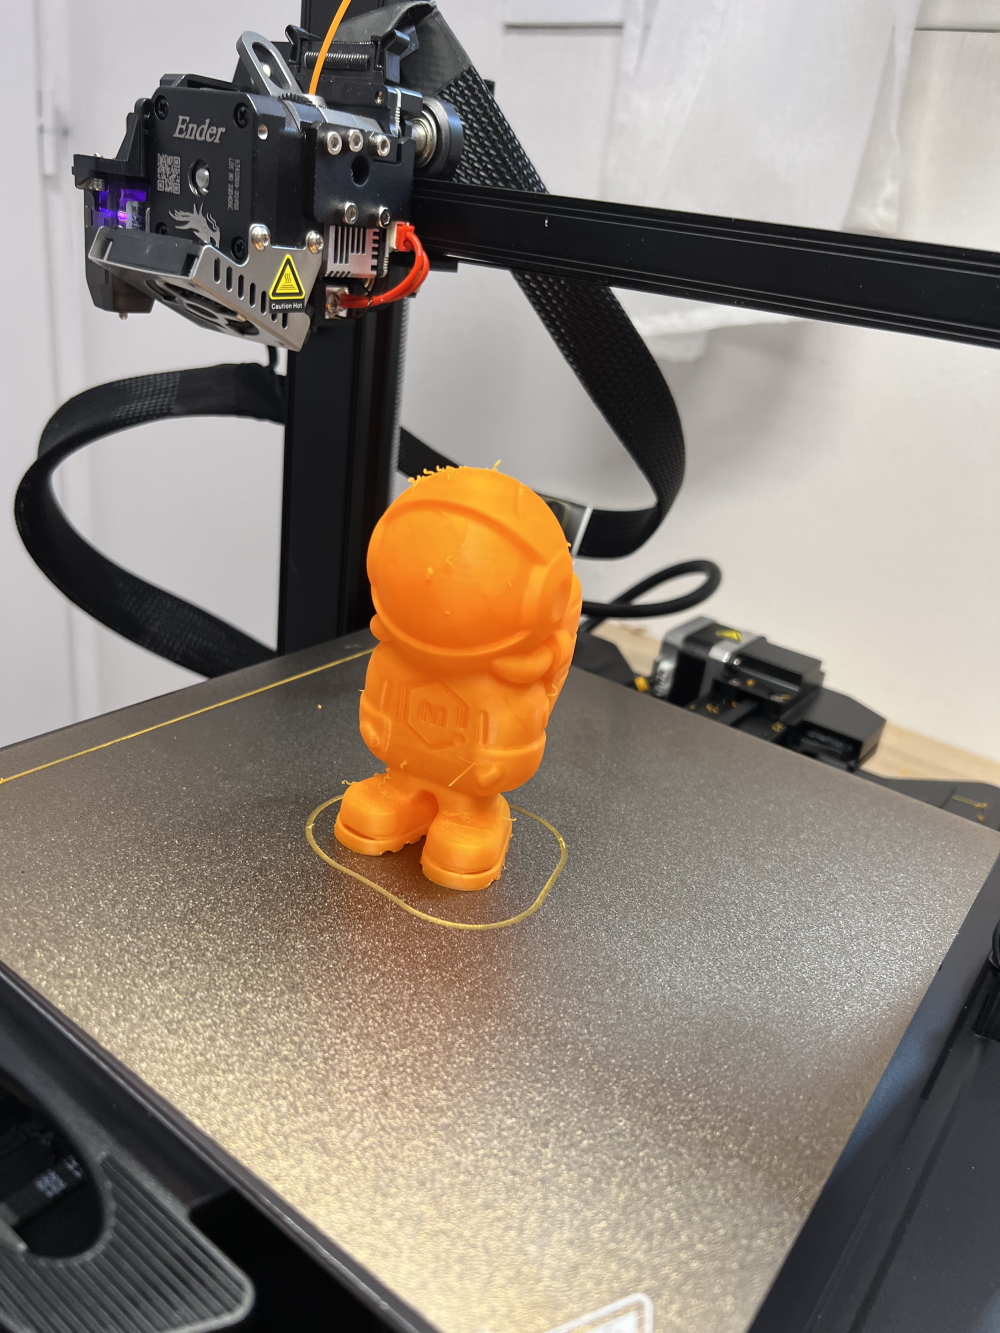 Test Creality Ender 3 S1 PRO, l'imprimante 3D reine de sa catégorie qui  grave laser aussi